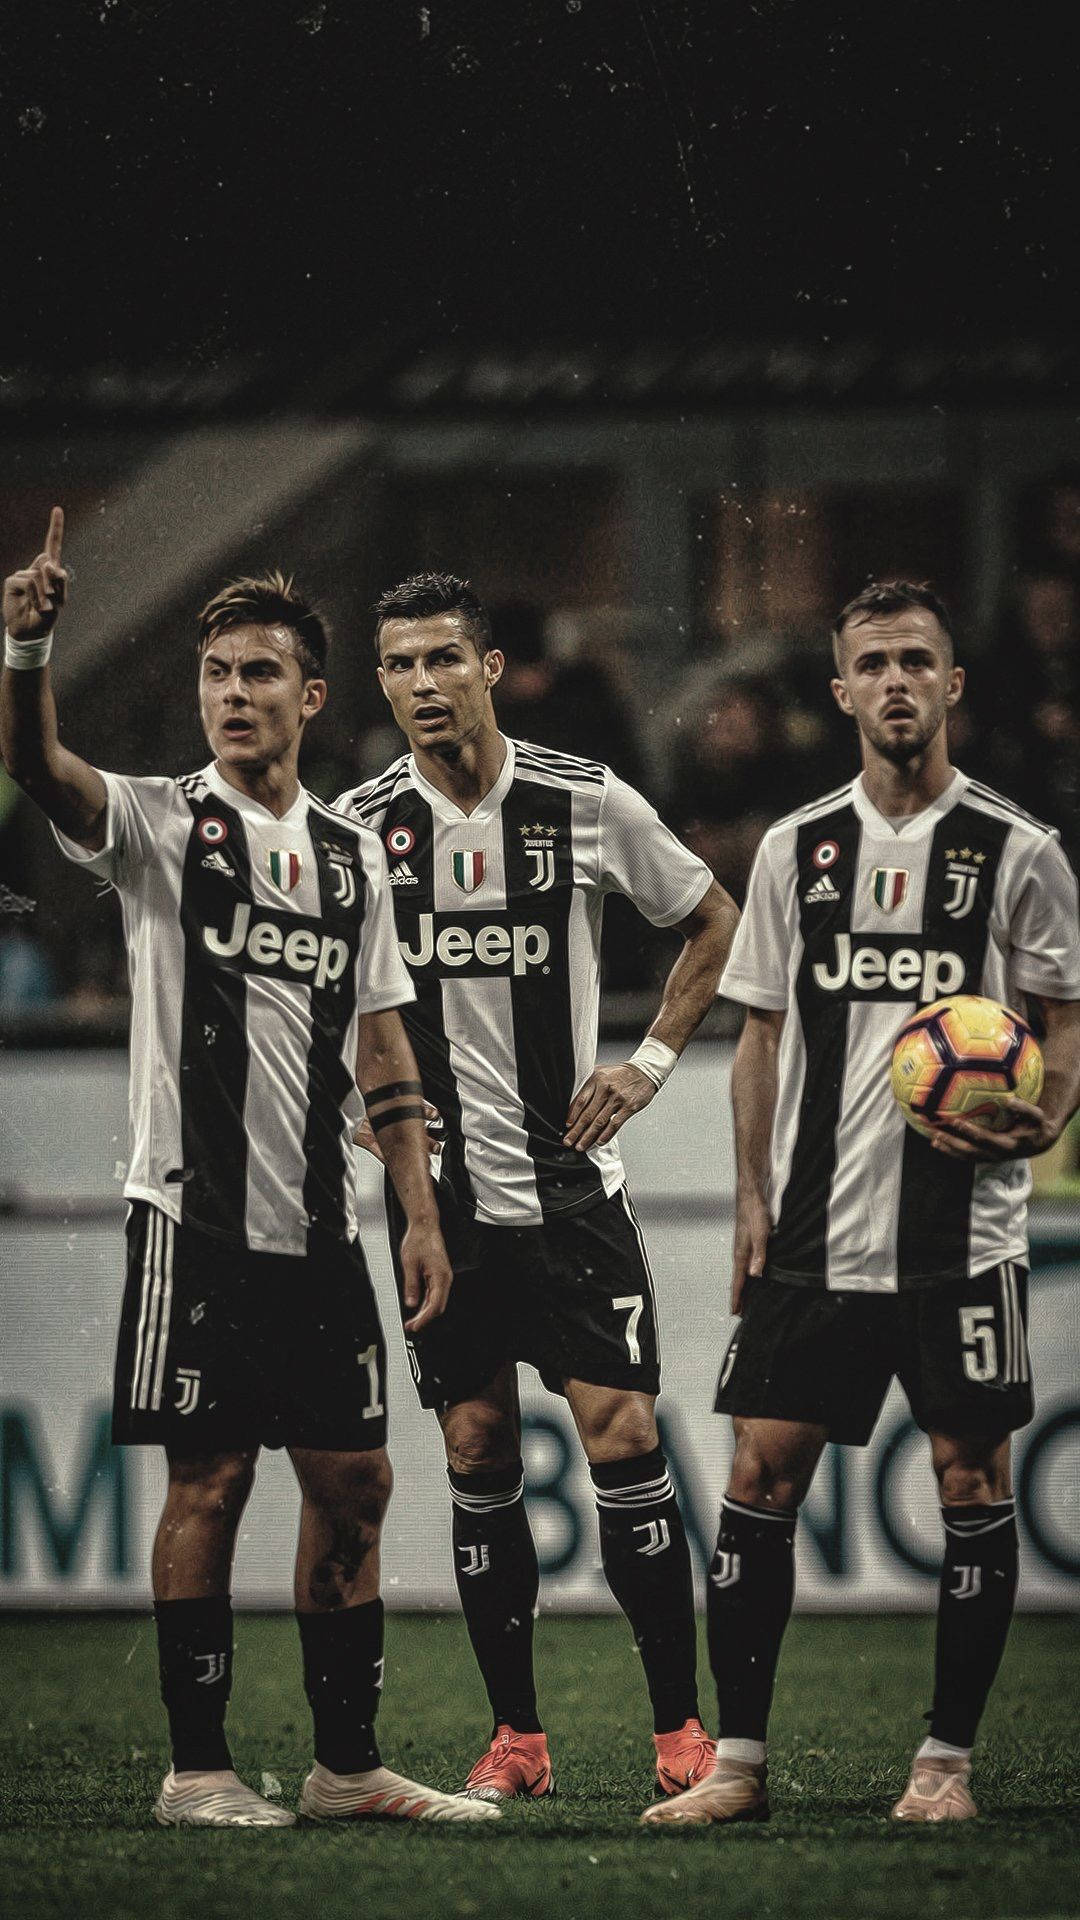 Download Juventus Player Dybala Ronaldo And Pjanić Wallpaper | Wallpapers .com